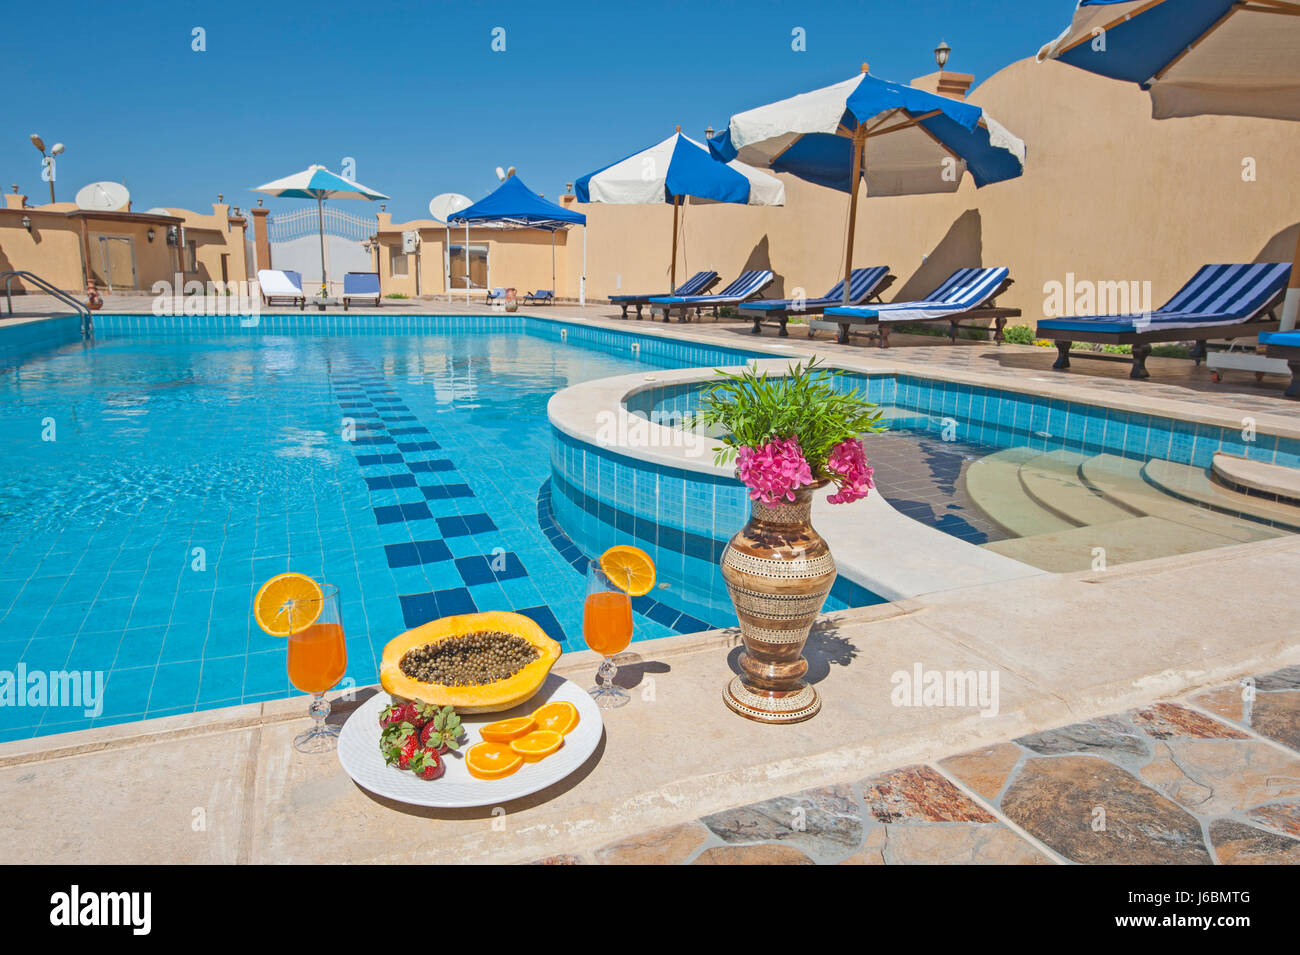 Villa di lusso show home in estate tropicale resort per vacanze con piscina lettini cocktail bevande e frutta Foto Stock